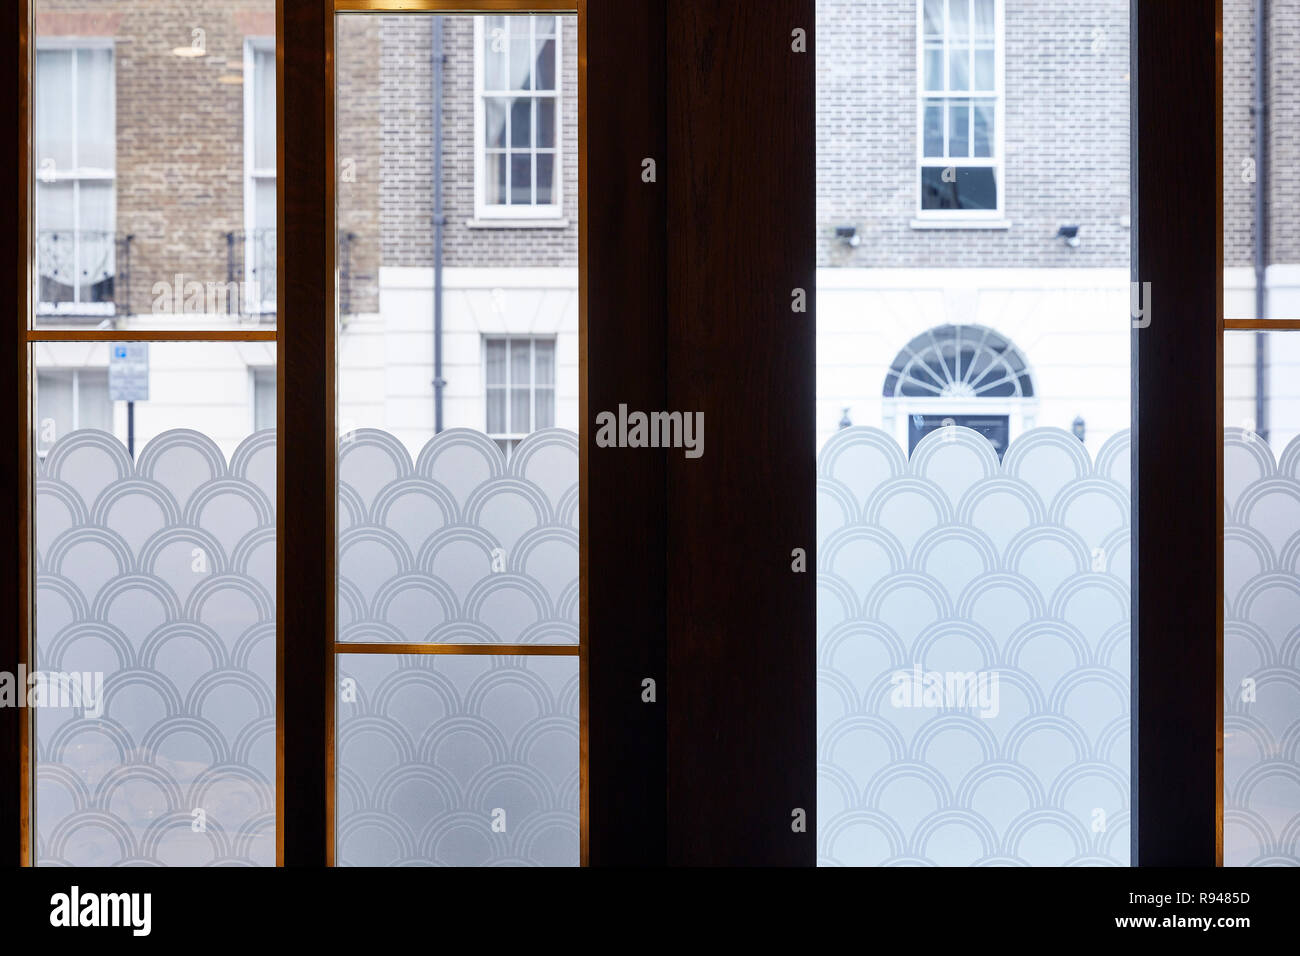 Fensterwand mit Blick auf die Straße. Royal China Club, London, Vereinigtes Königreich. Architekt: Steif+Trevillion Architekten, 2018. Stockfoto